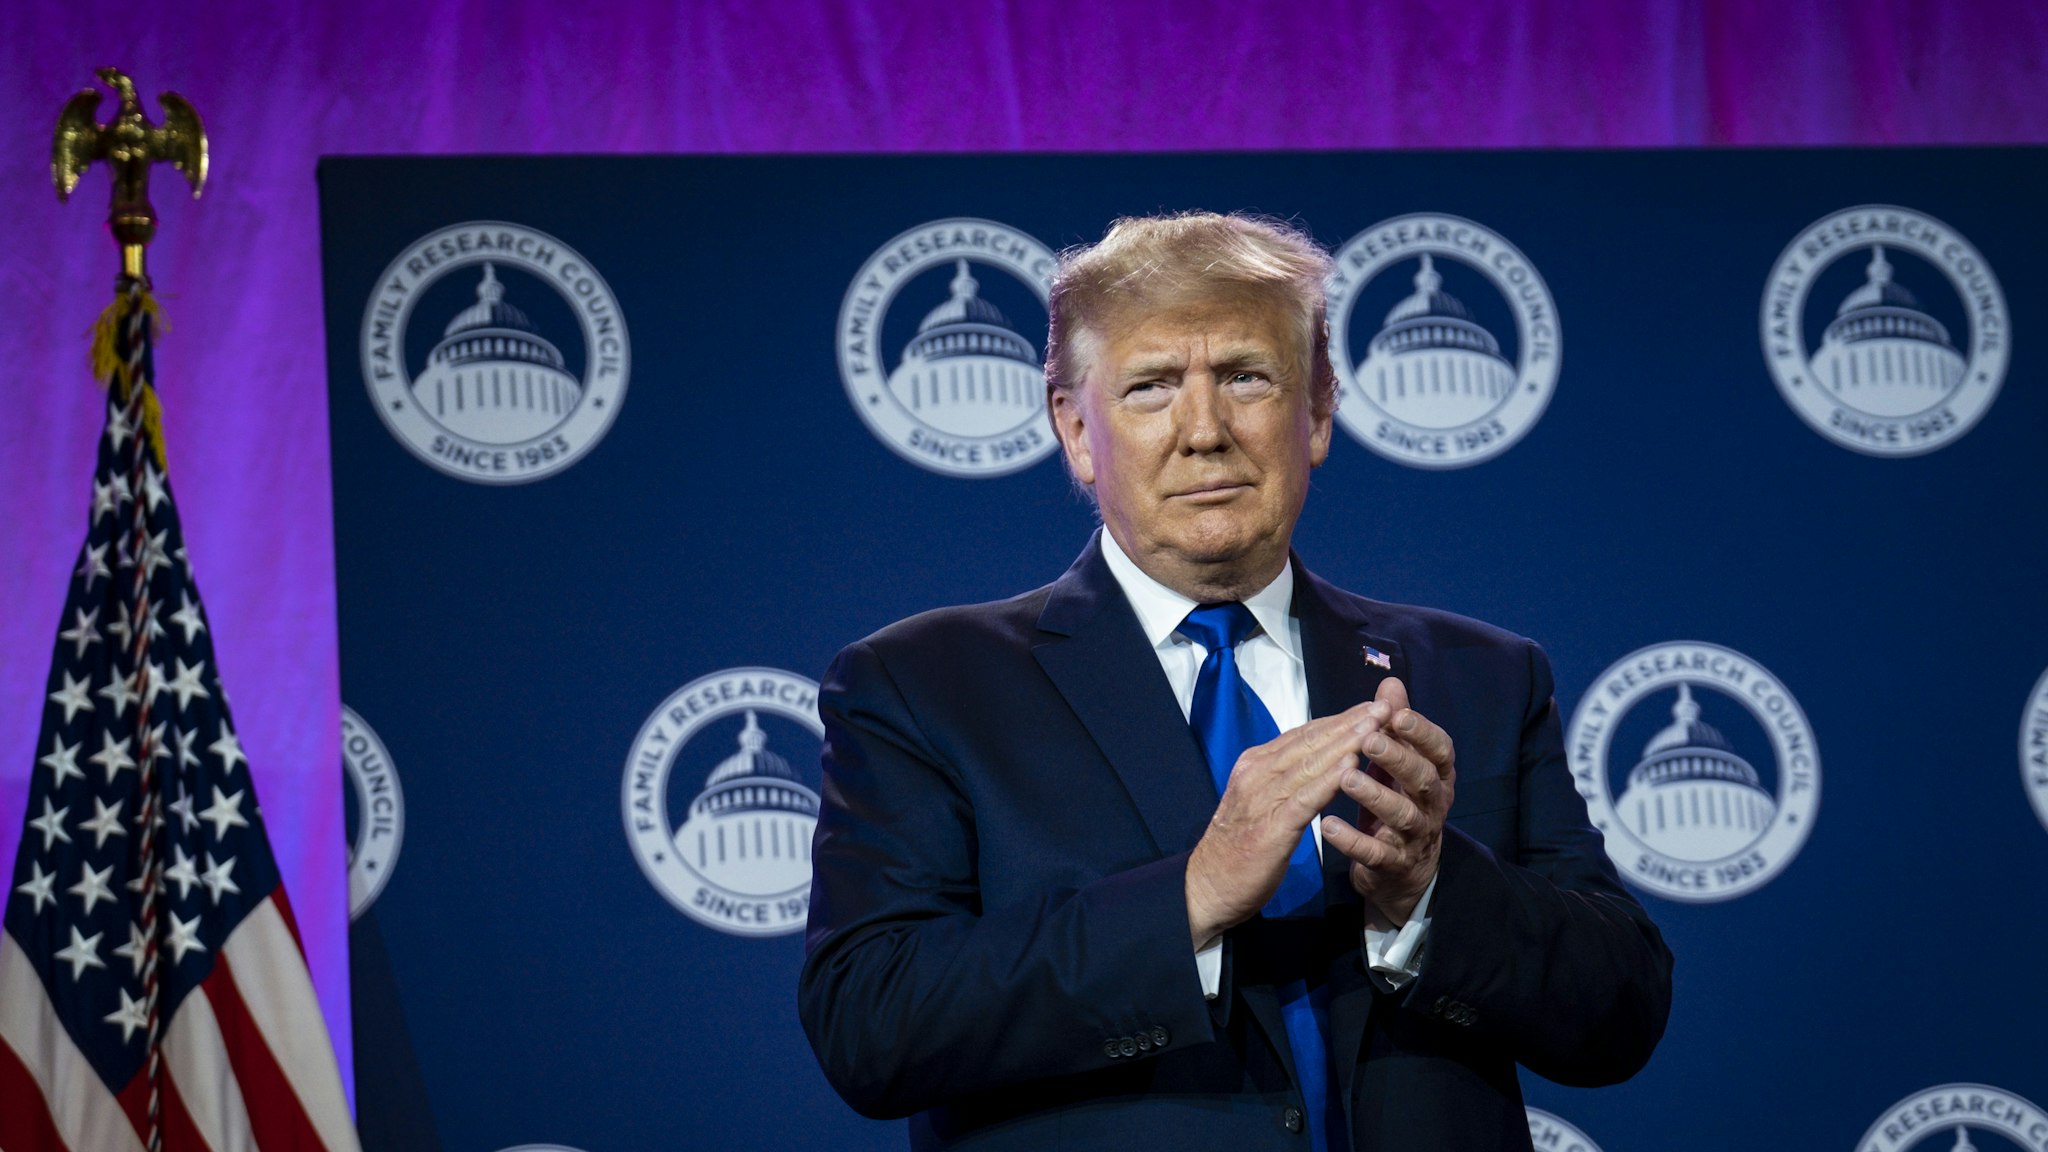 U.S. President Donald Trump prepares to speak at the Values Voter Summit at the Omni Shoreham Hotel in Washington, D.C., U.S., on Saturday, Oct. 12, 2019.